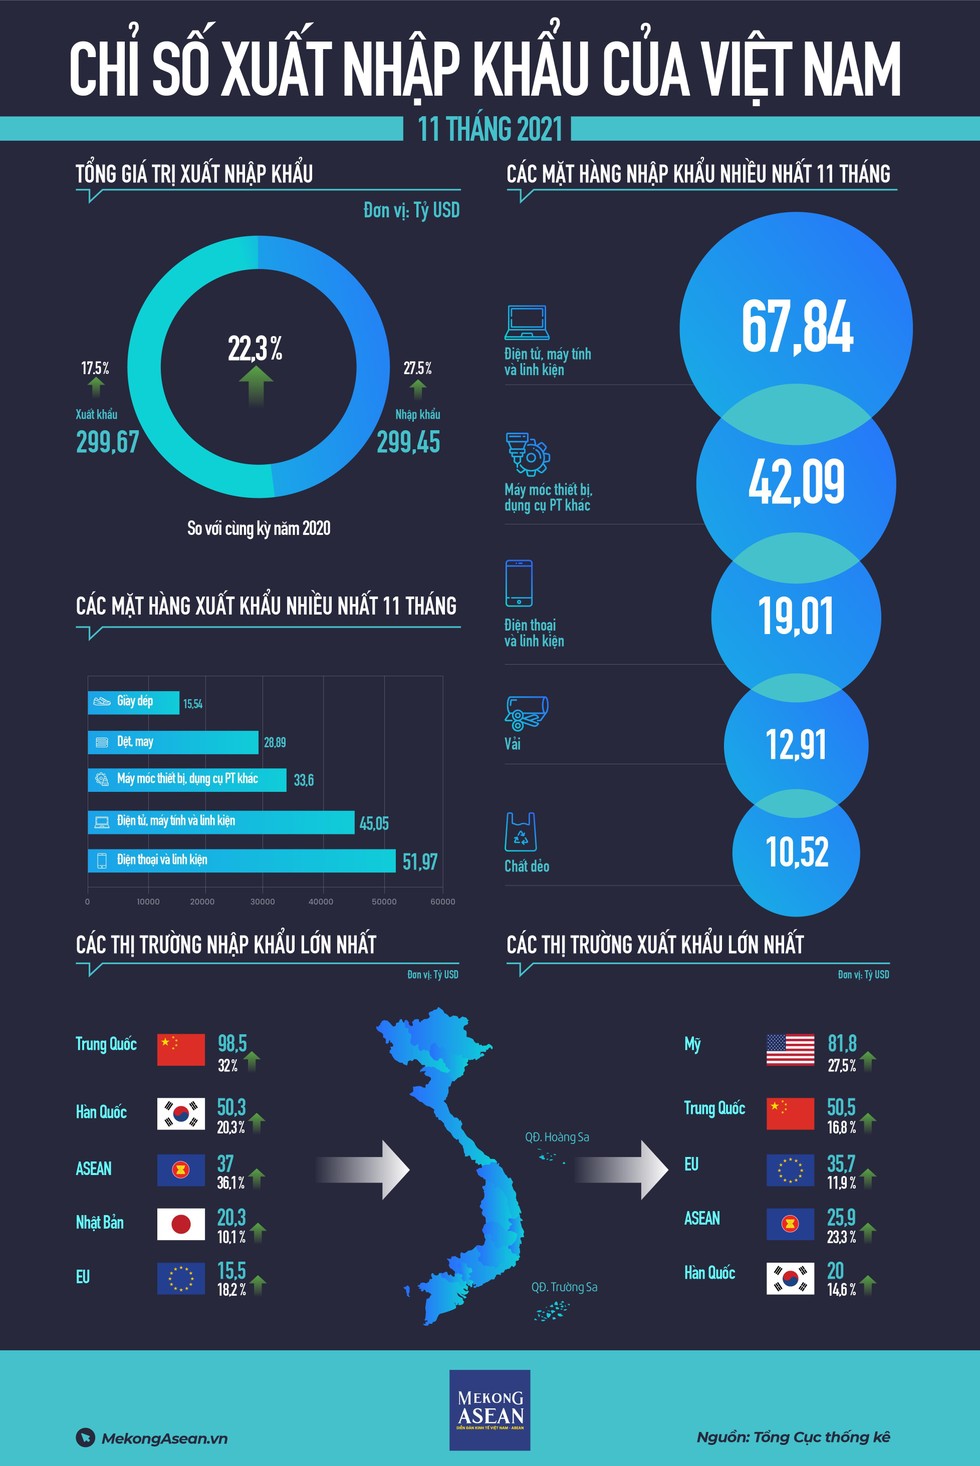 Xuất nhập khẩu Việt Nam tiếp tục tăng